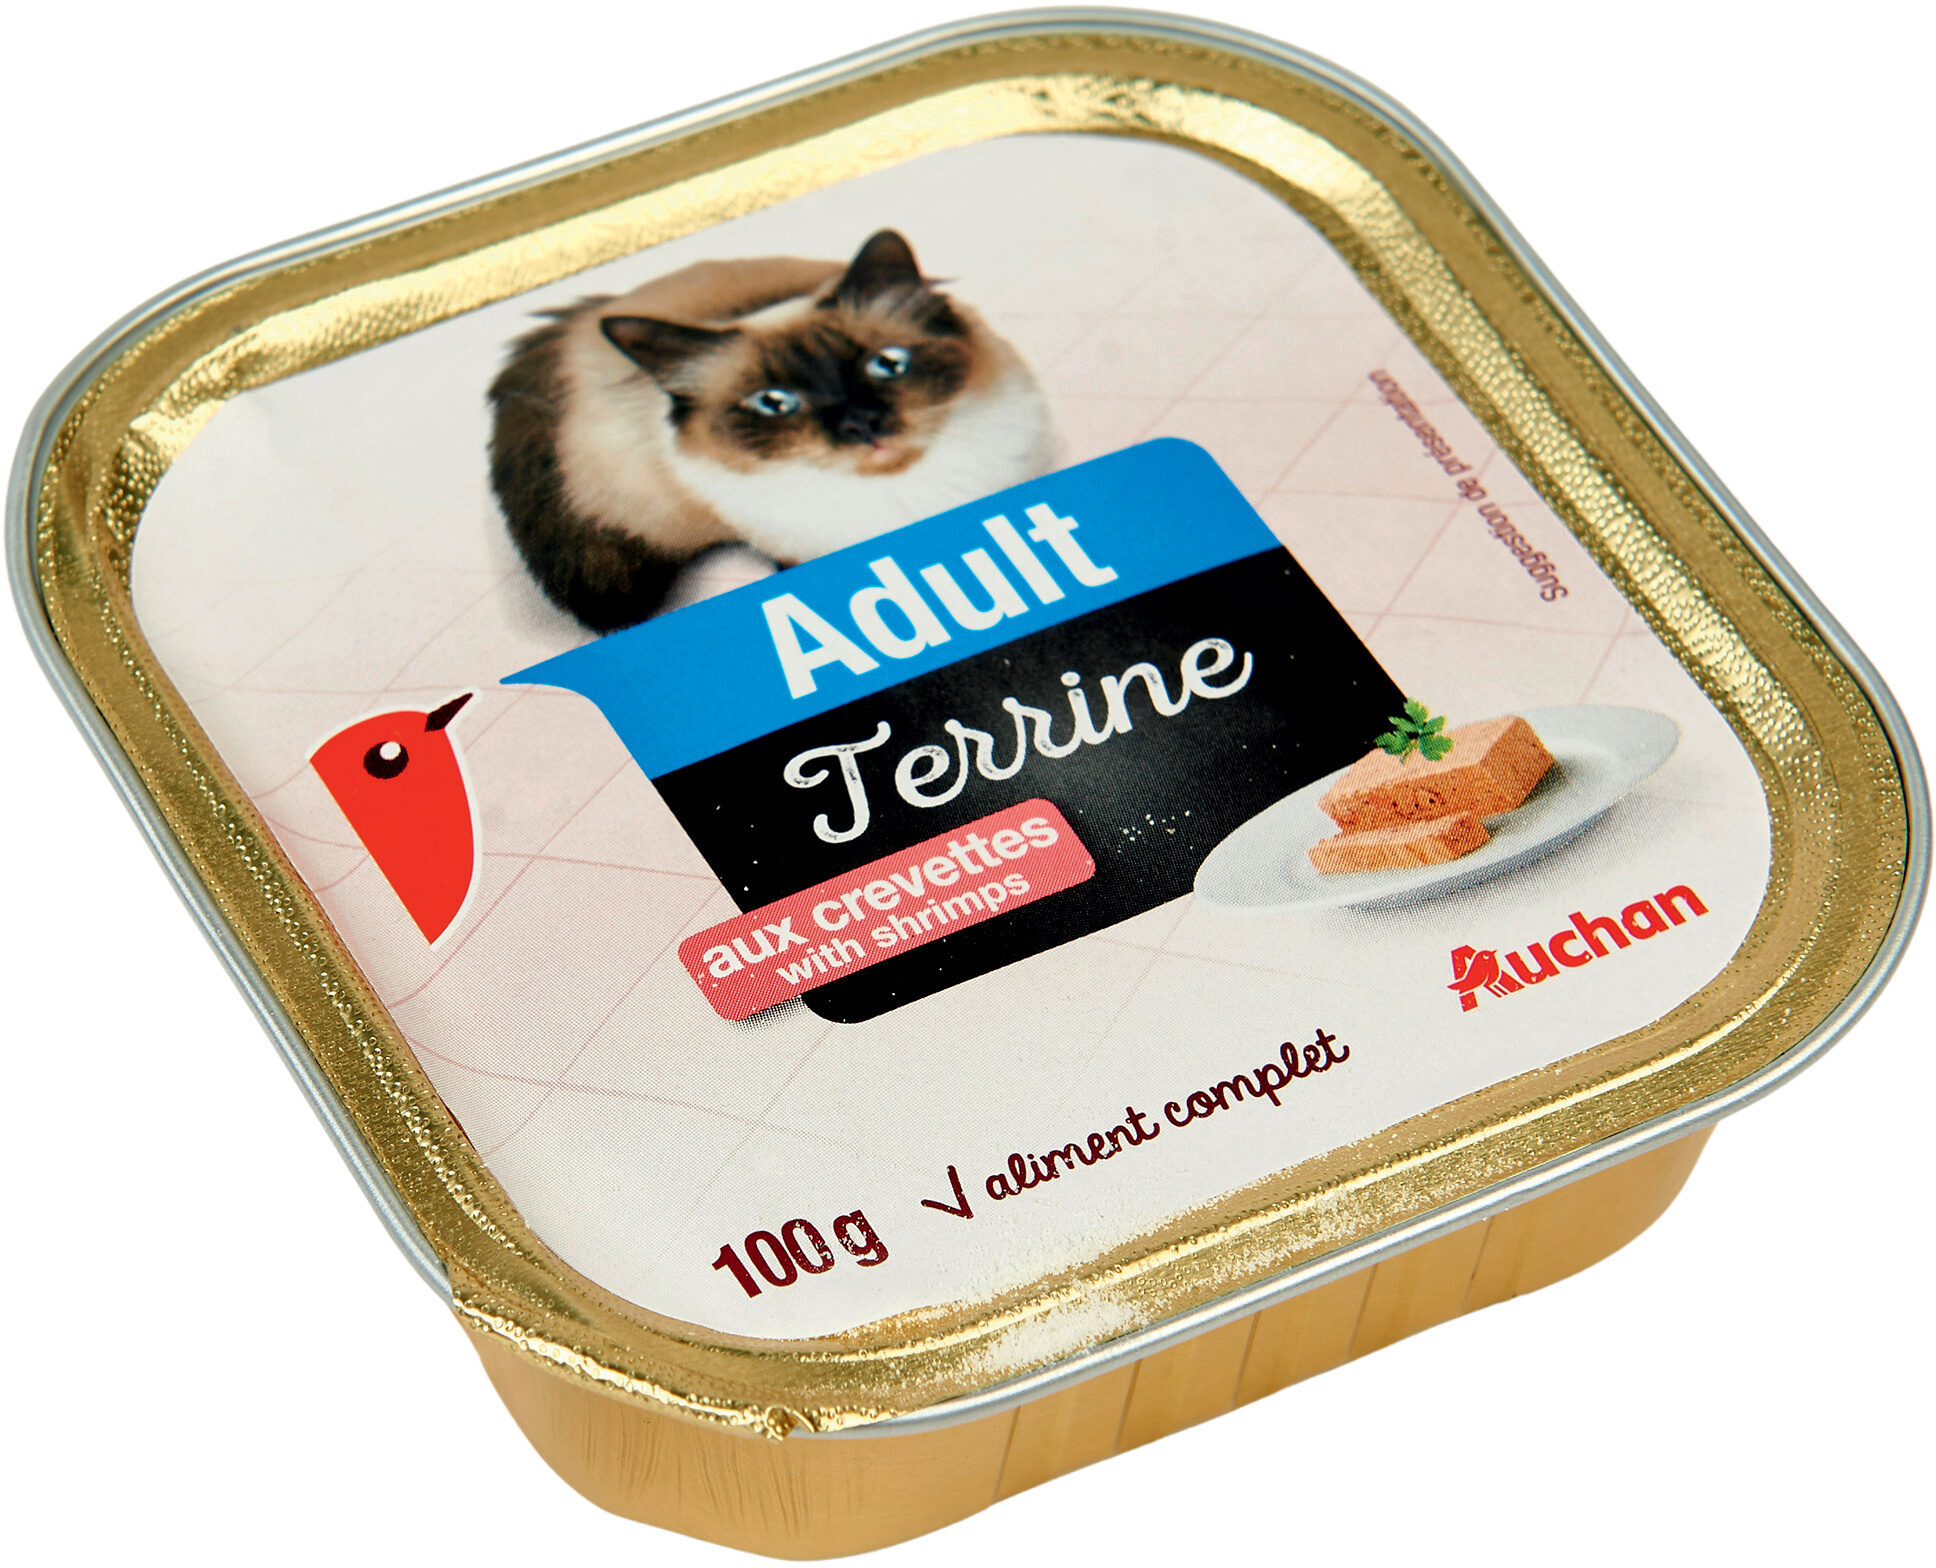 Adult - Terrine aux crevettes - Produit - fr